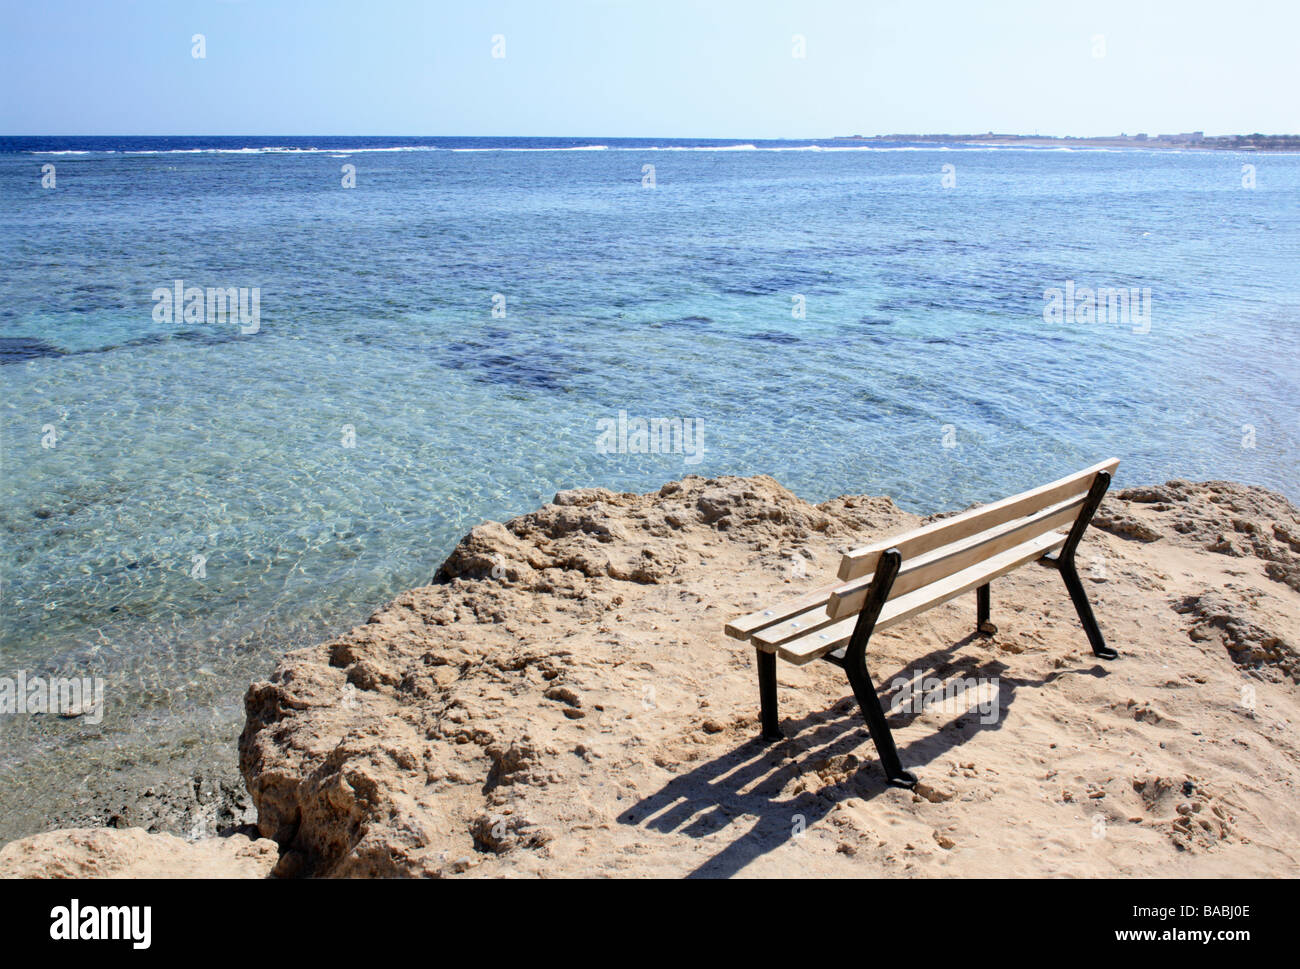 Aegypten Rotes Meer Quseir ein kleiner Ort 140 km suedlich von Hurghada xxxxx Stock Photo